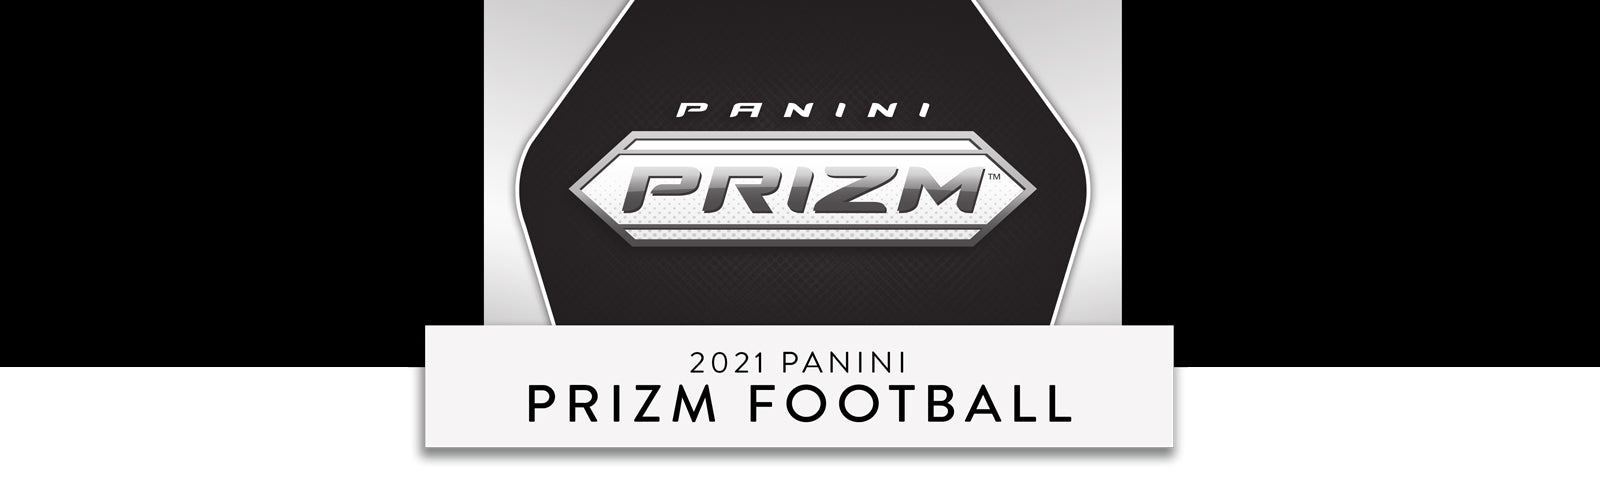 2021 Panini Prizm Football